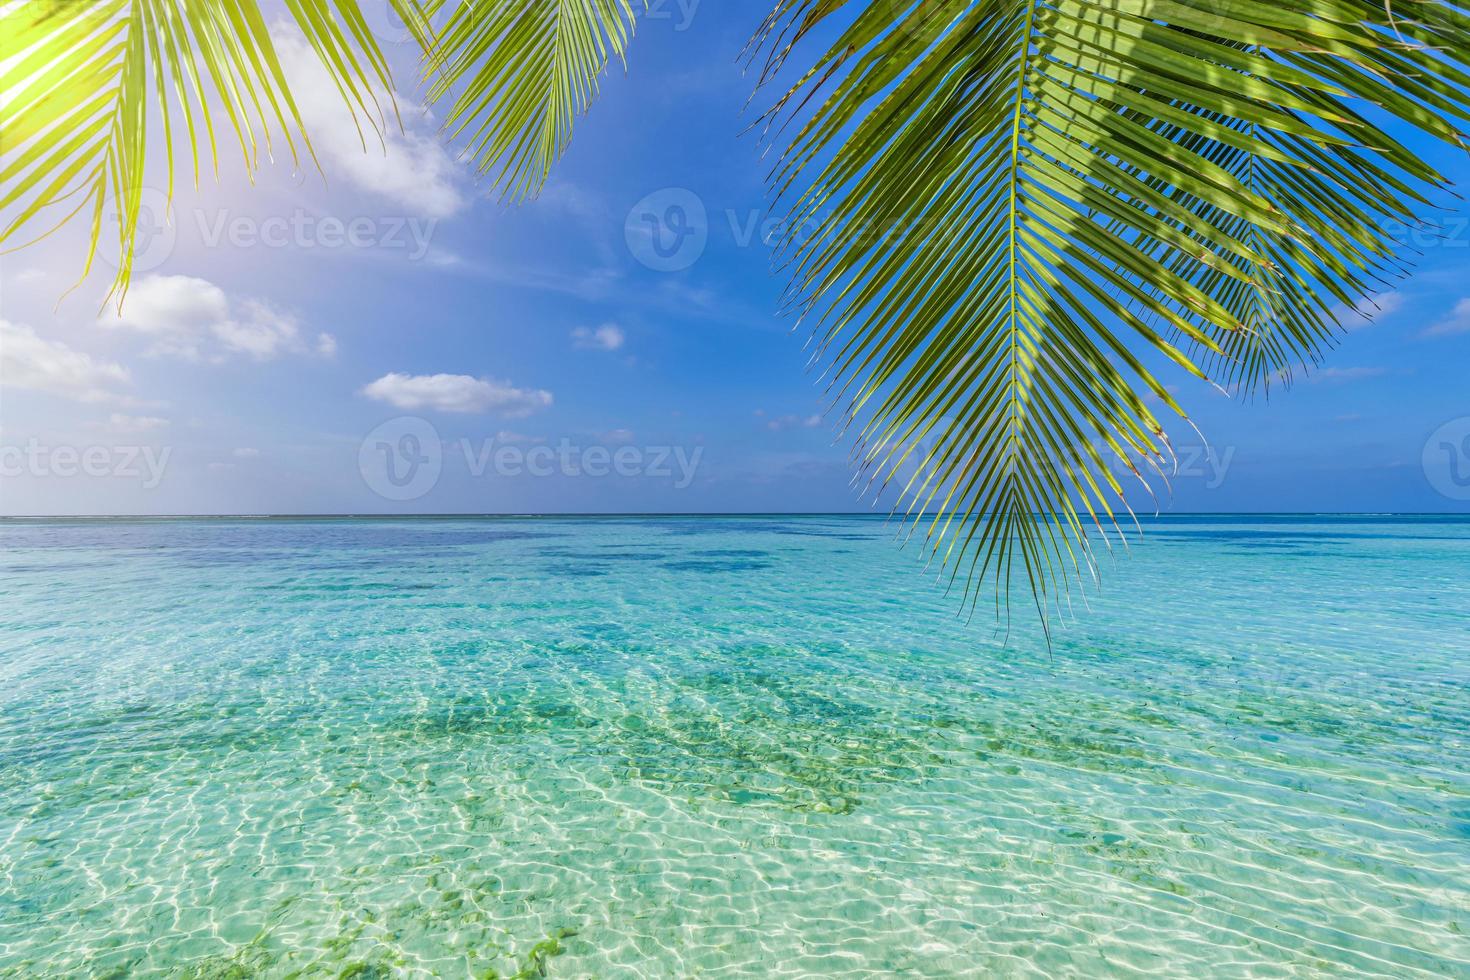 groen bladeren van palm boom over- tropisch strand. panoramisch paradijs eiland visie zee lagune, ontspannende natuur achtergrond turkoois water zeegezicht. zonnig panorama, zomer strand landschap exotisch bestemming foto